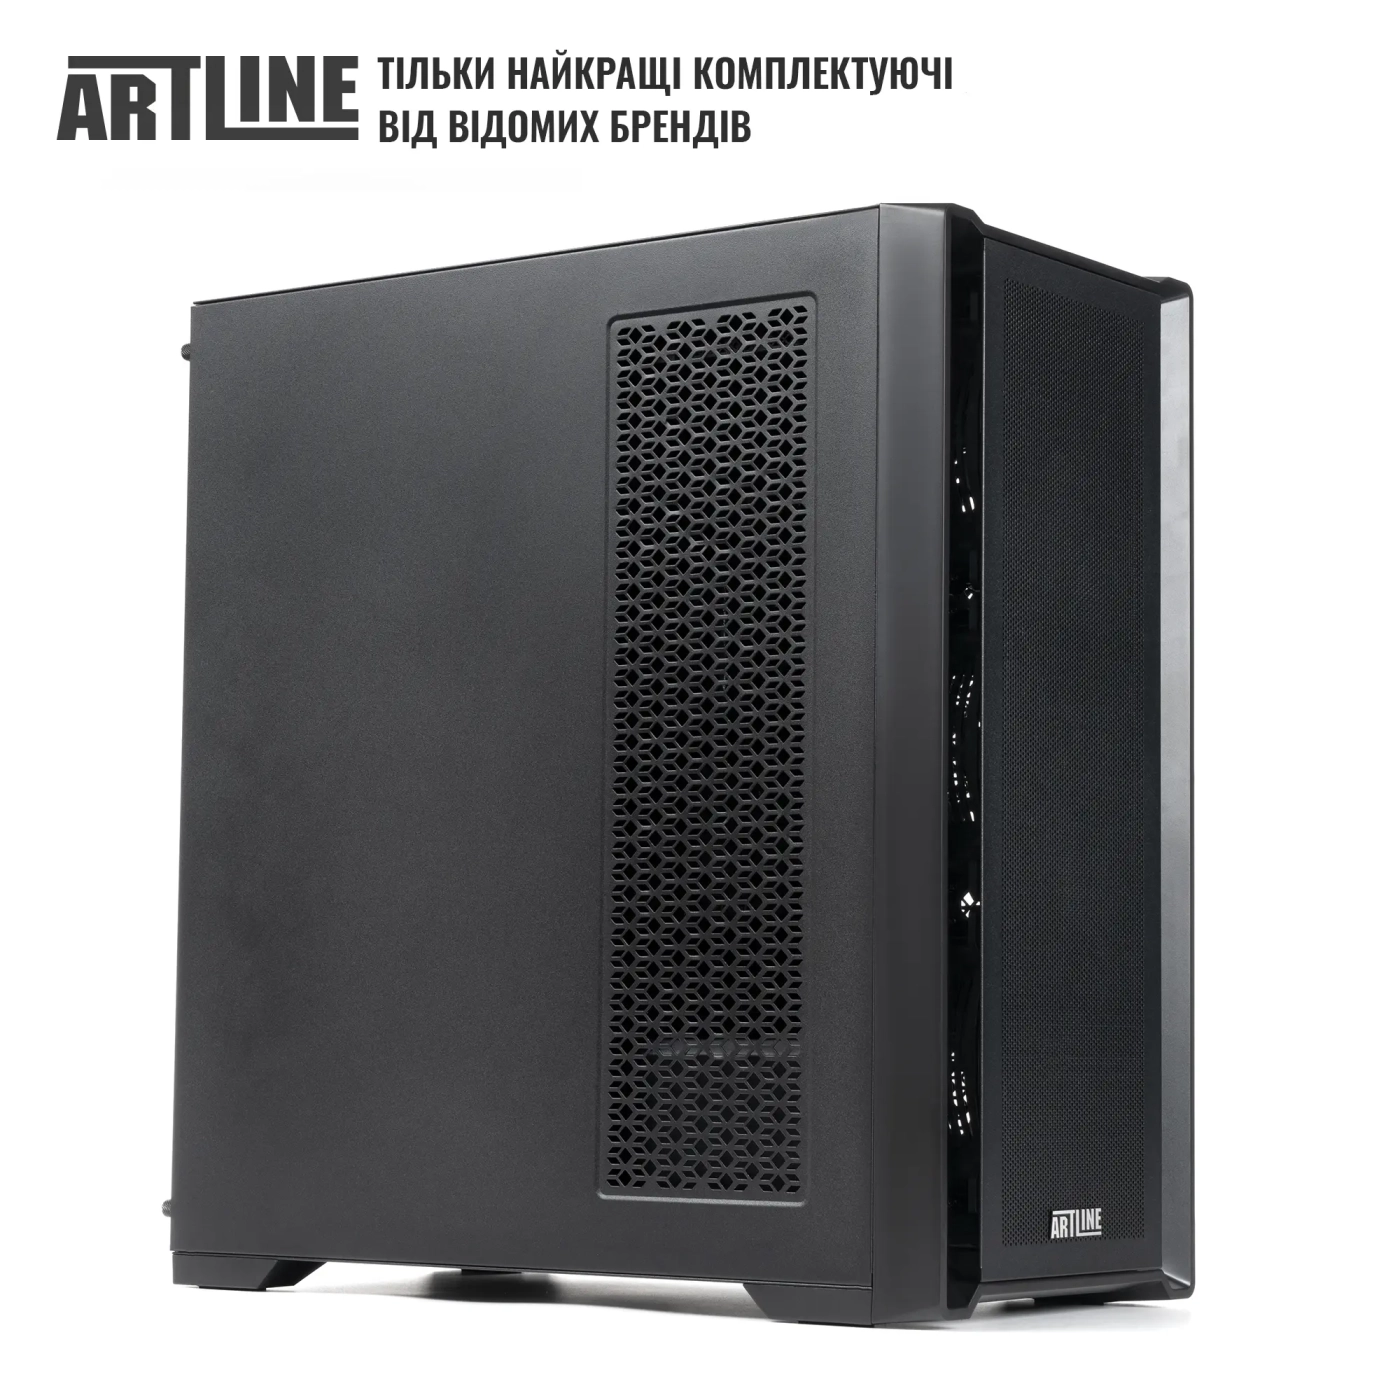 Купить Сервер ARTLINE Business T81 (T81v26) - фото 4